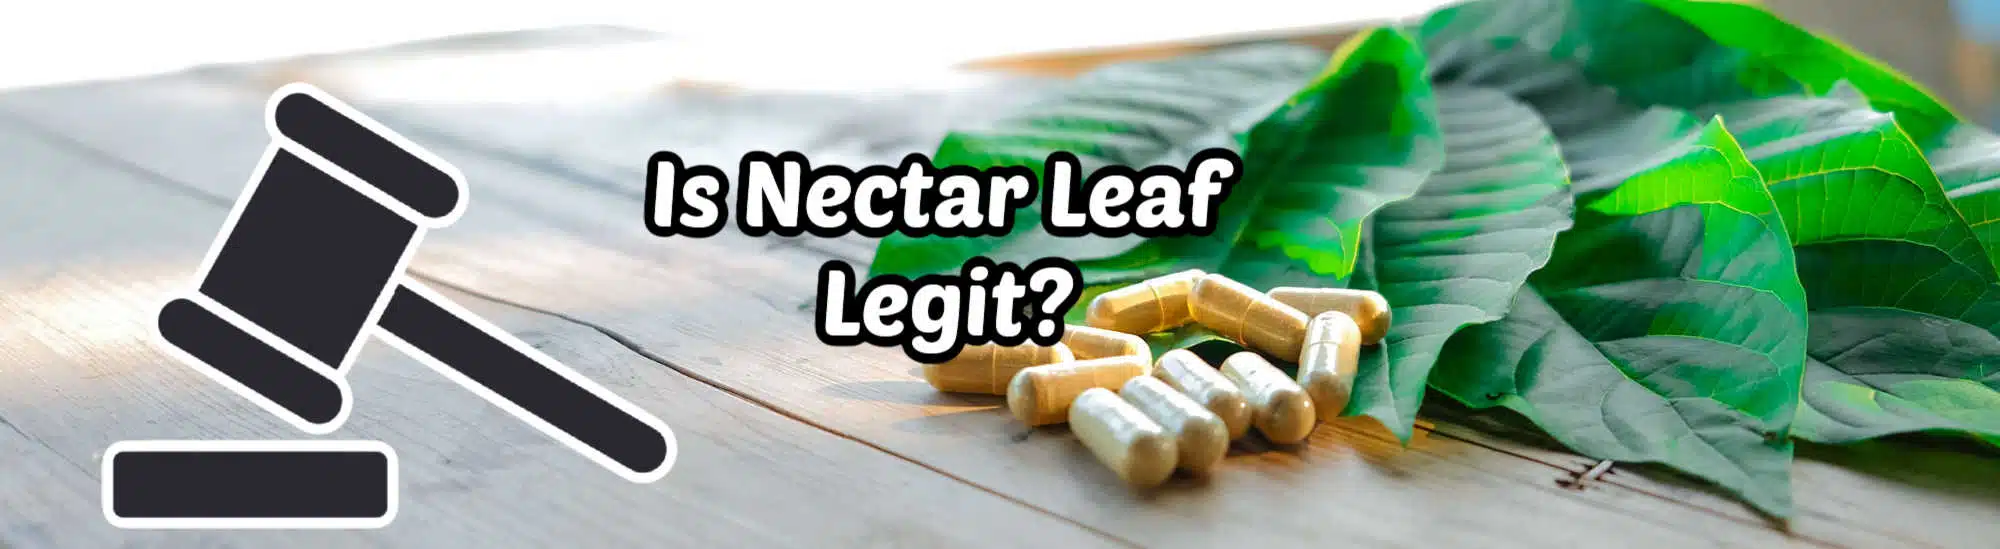 Is nectar leaf legit?